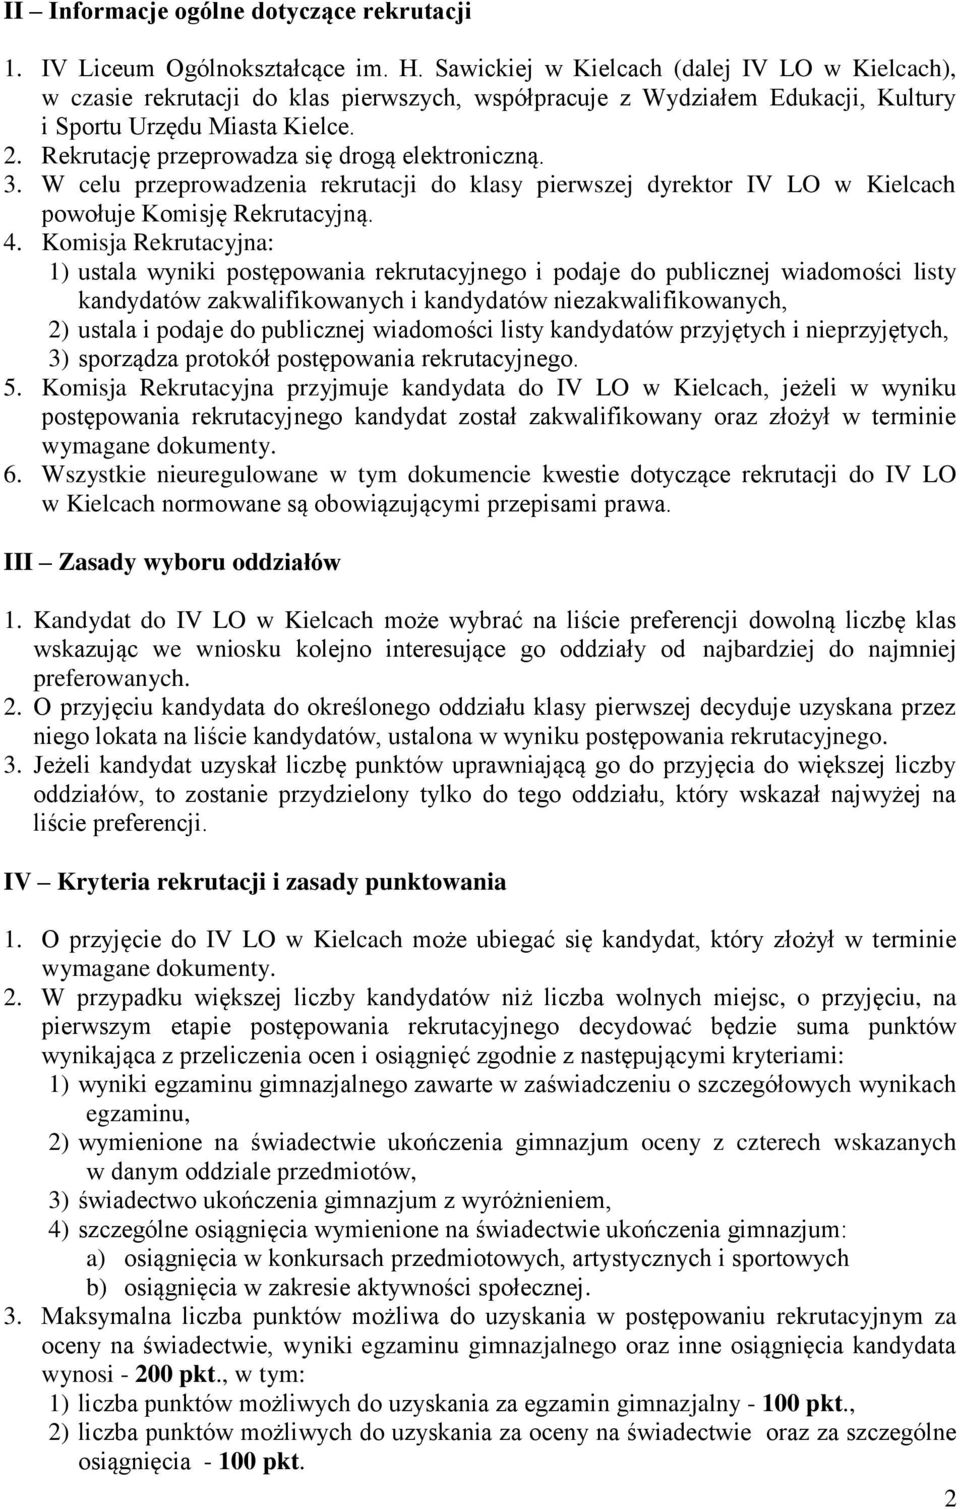 Rekrutację przeprowadza się drogą elektroniczną. 3. W celu przeprowadzenia rekrutacji do klasy pierwszej dyrektor IV LO w Kielcach powołuje Komisję Rekrutacyjną. 4.